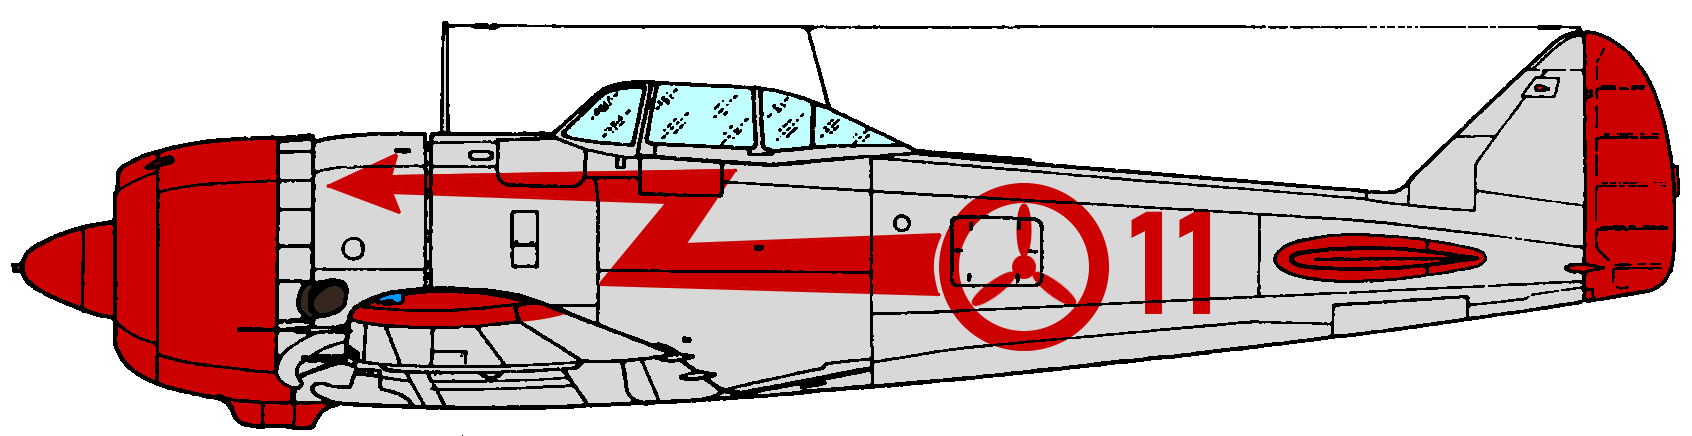 Merc Ki-44.png